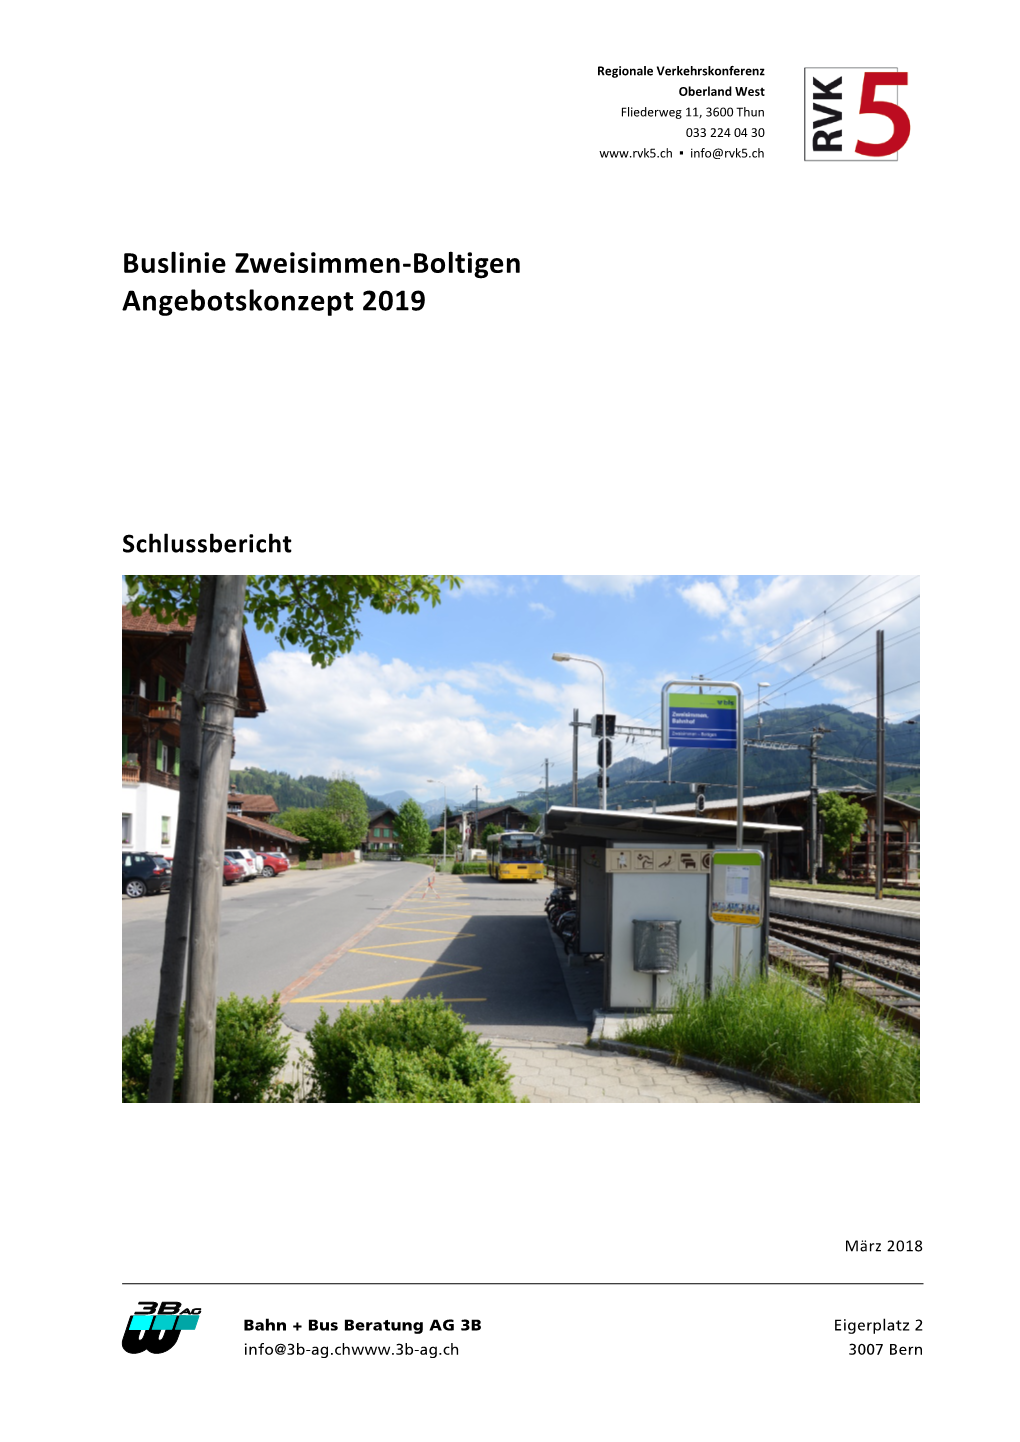 Buslinie Zweisimmen-Boltigen Angebotskonzept 2019